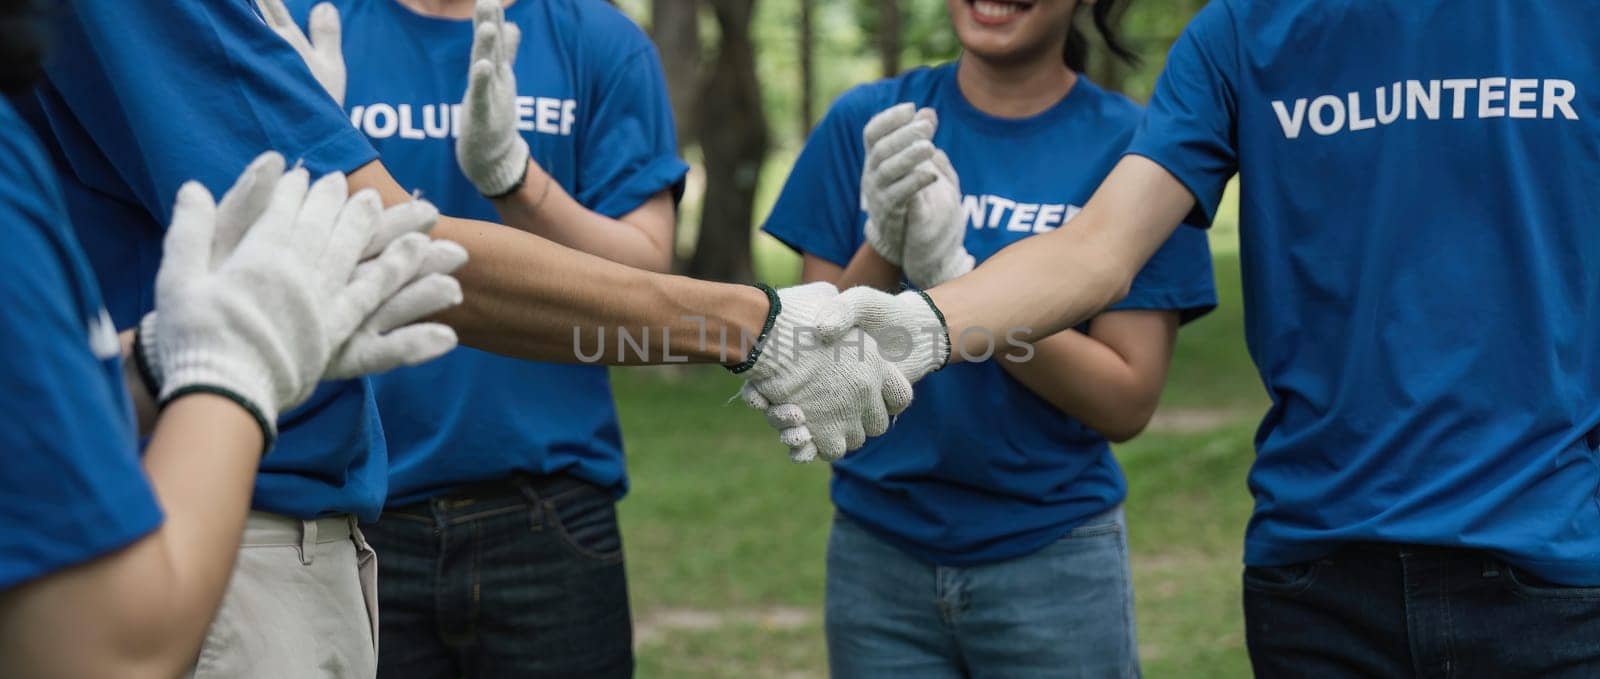 Environmentalist volunteers planting new tree and handshaking by nateemee